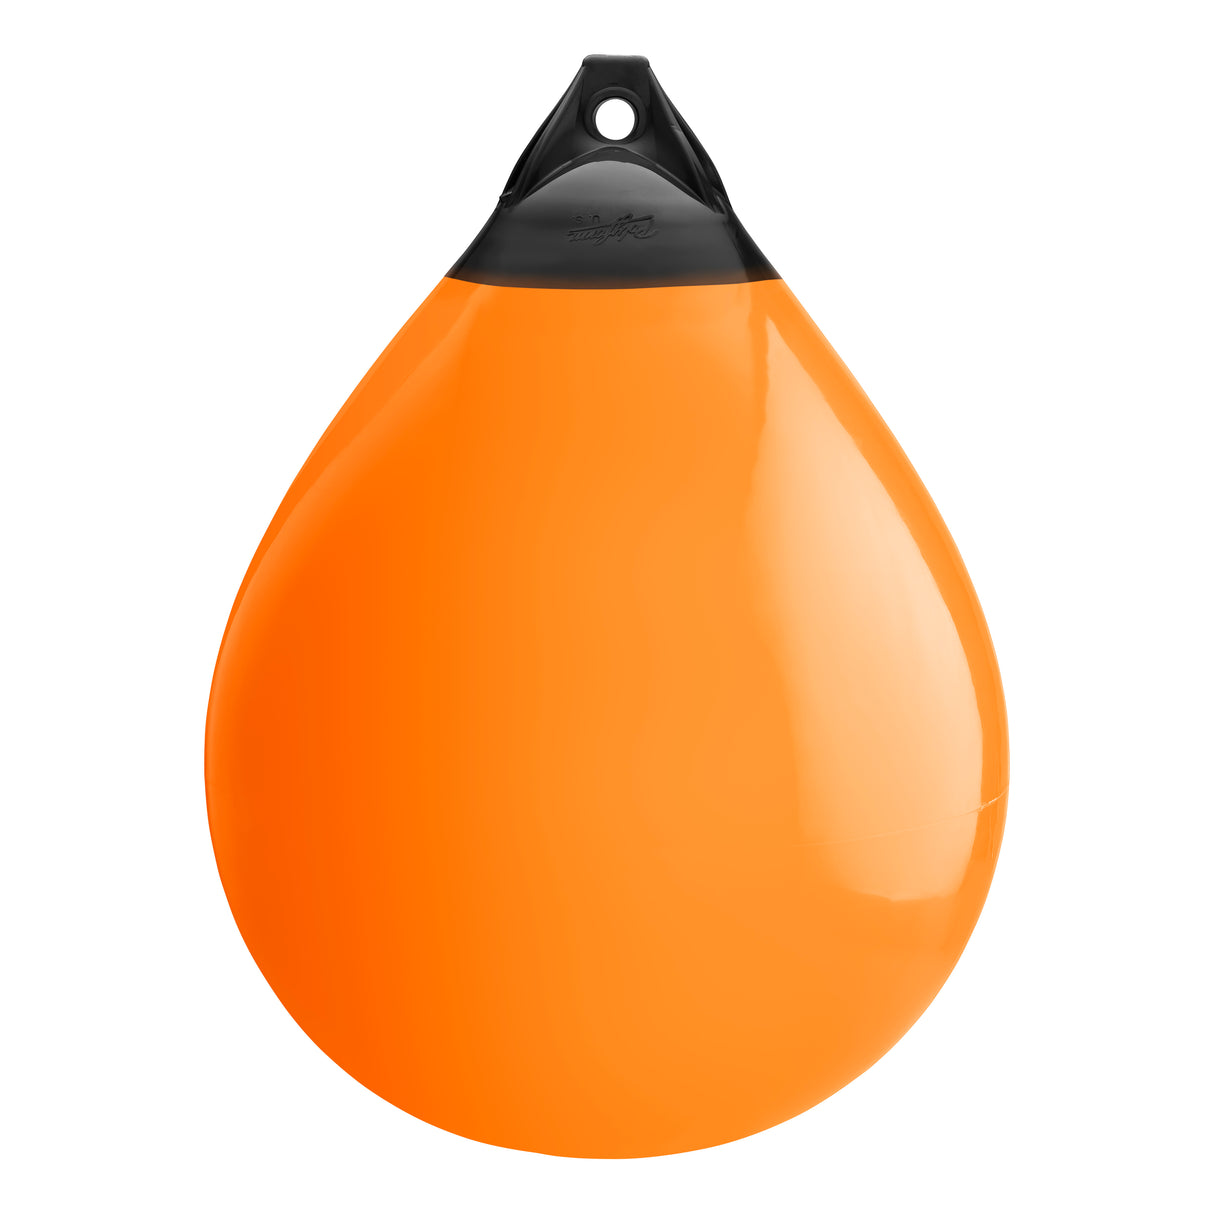 Orange buoy with Black-Top, Polyform A-7